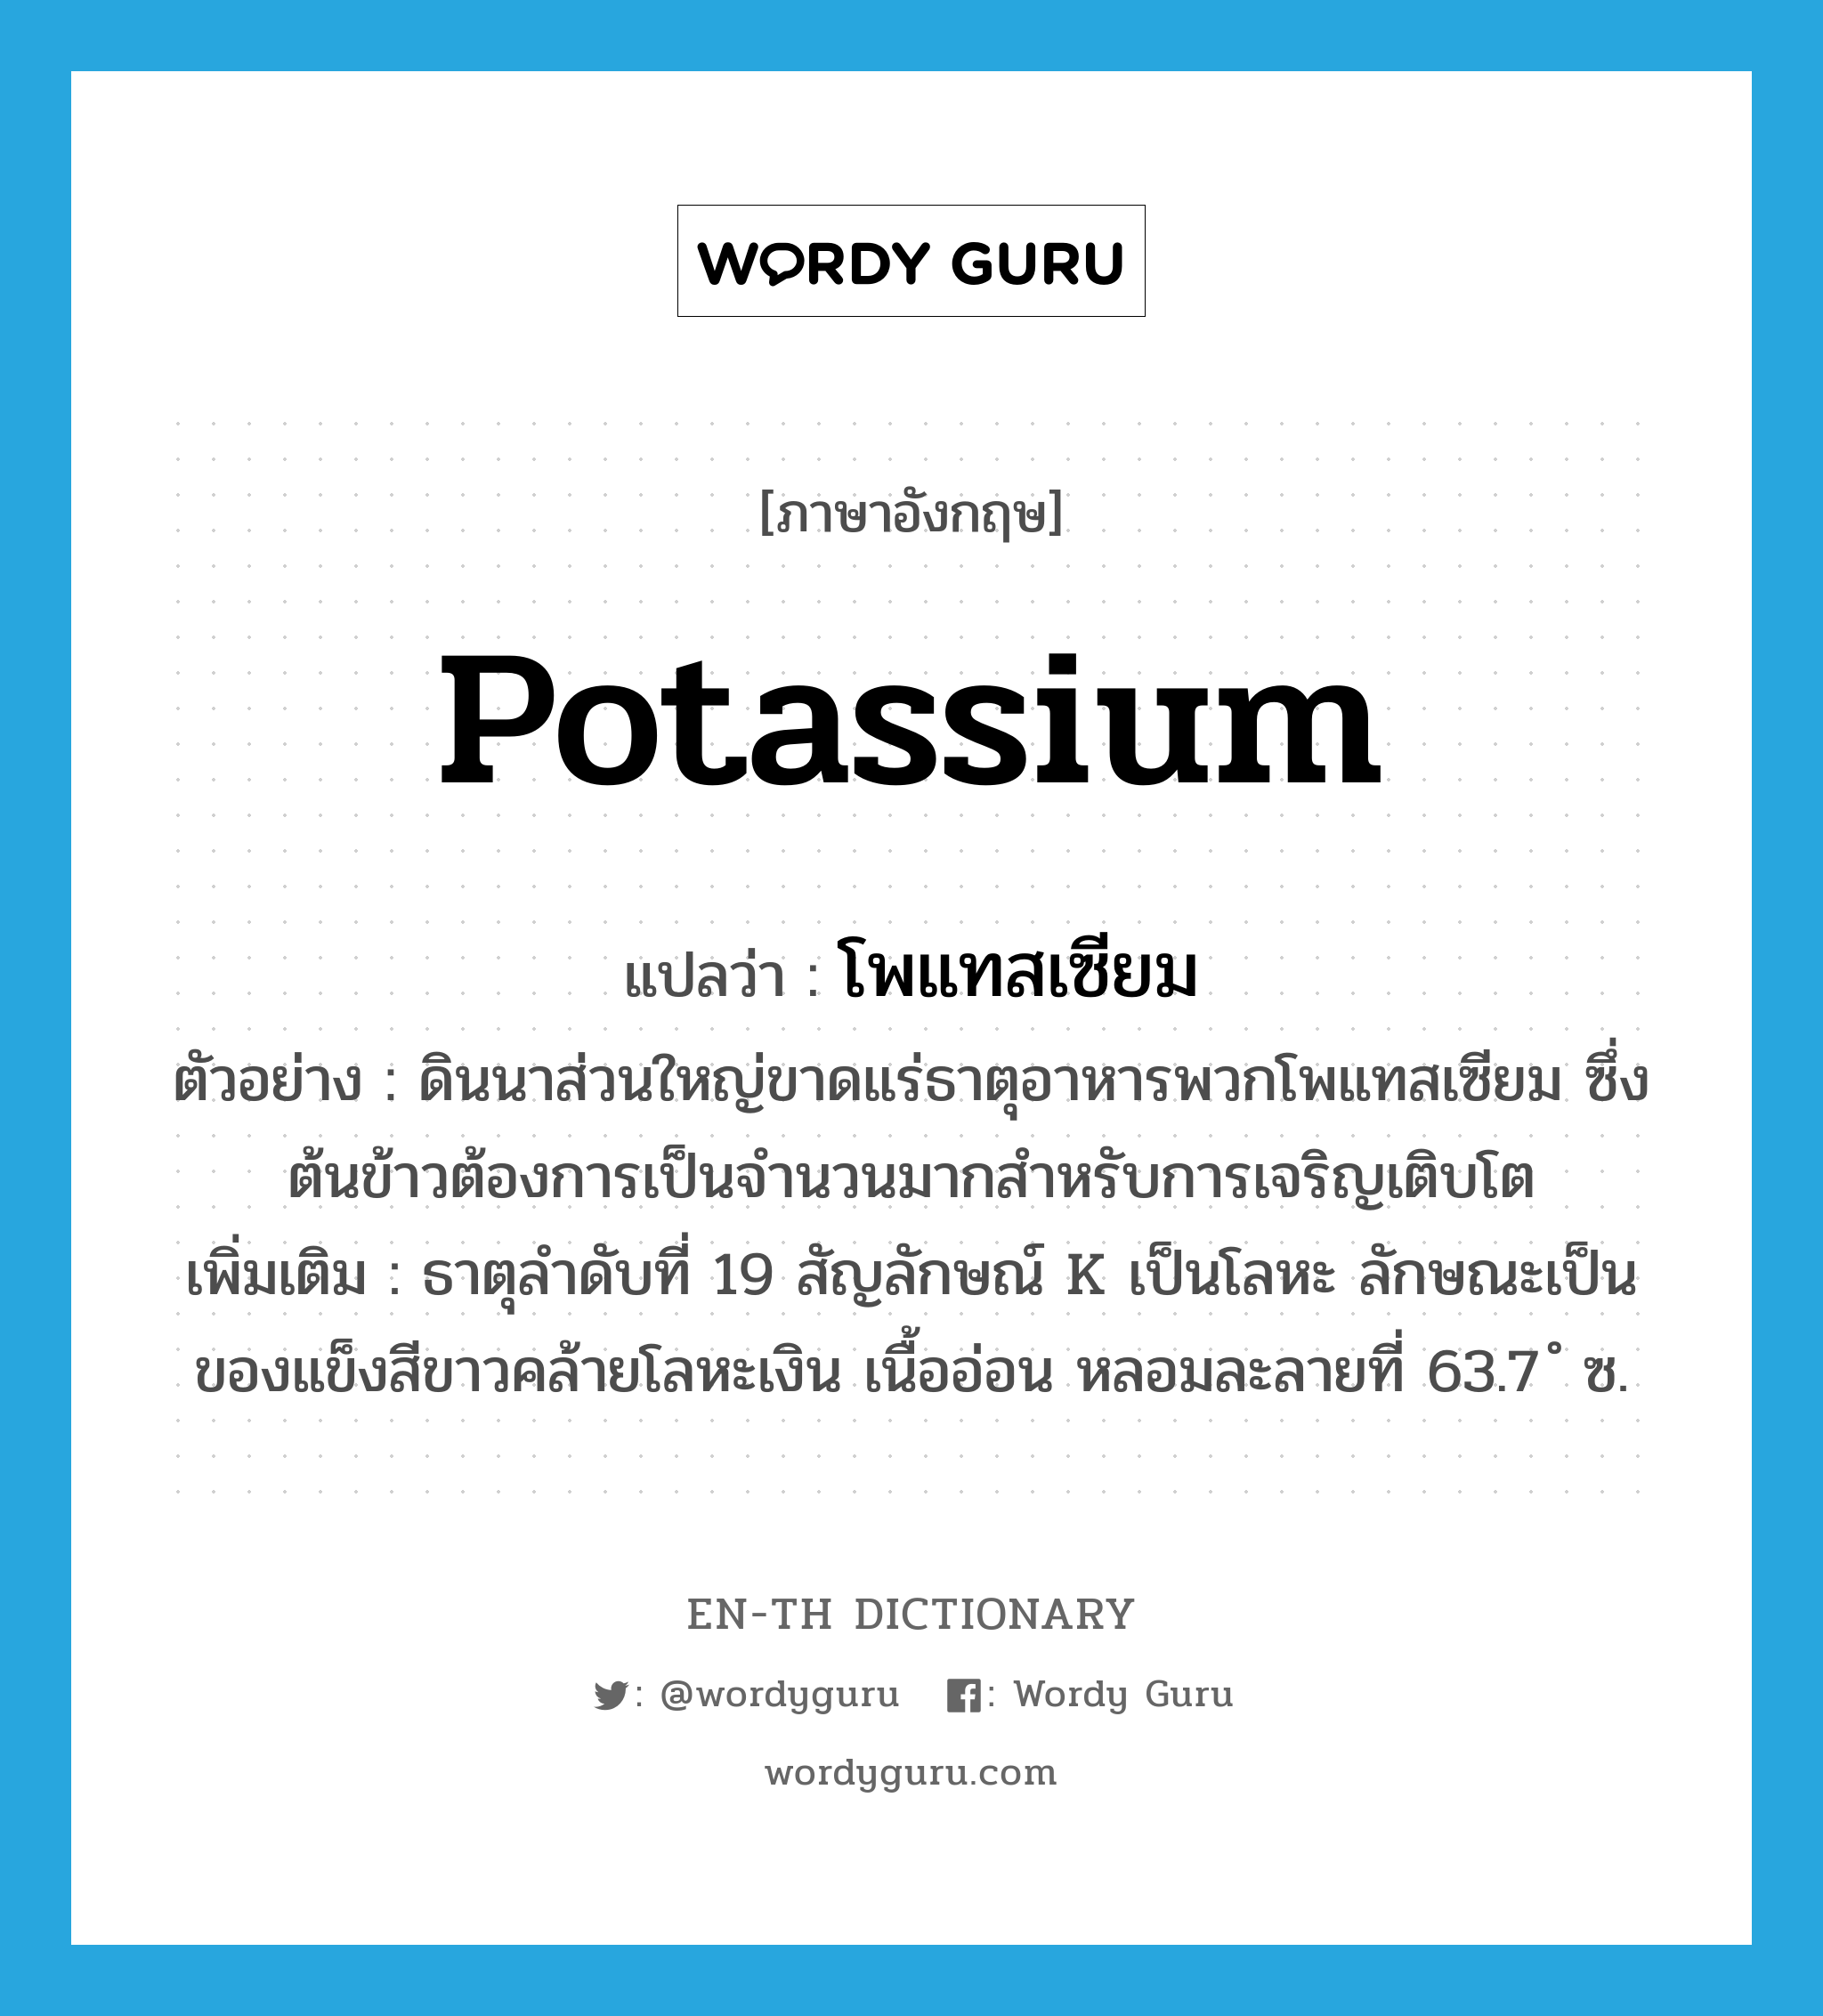 potassium แปลว่า?, คำศัพท์ภาษาอังกฤษ potassium แปลว่า โพแทสเซียม ประเภท N ตัวอย่าง ดินนาส่วนใหญ่ขาดแร่ธาตุอาหารพวกโพแทสเซียม ซึ่งต้นข้าวต้องการเป็นจำนวนมากสำหรับการเจริญเติบโต เพิ่มเติม ธาตุลำดับที่ 19 สัญลักษณ์ K เป็นโลหะ ลักษณะเป็นของแข็งสีขาวคล้ายโลหะเงิน เนื้ออ่อน หลอมละลายที่ 63.7 ํ ซ. หมวด N